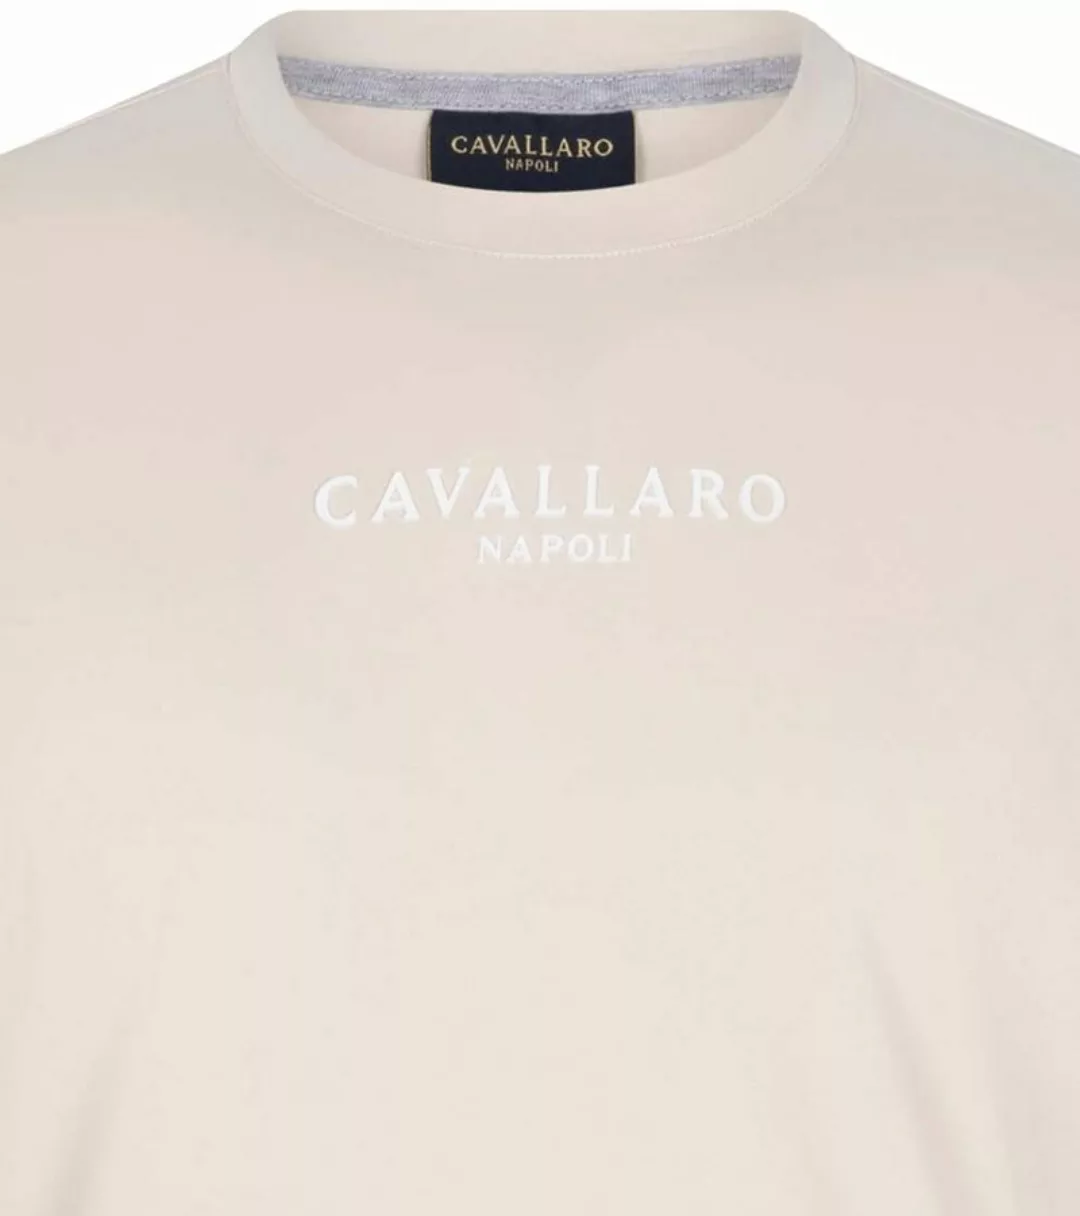 Cavallaro Bari T-Shirt Logo Ecru - Größe XL günstig online kaufen